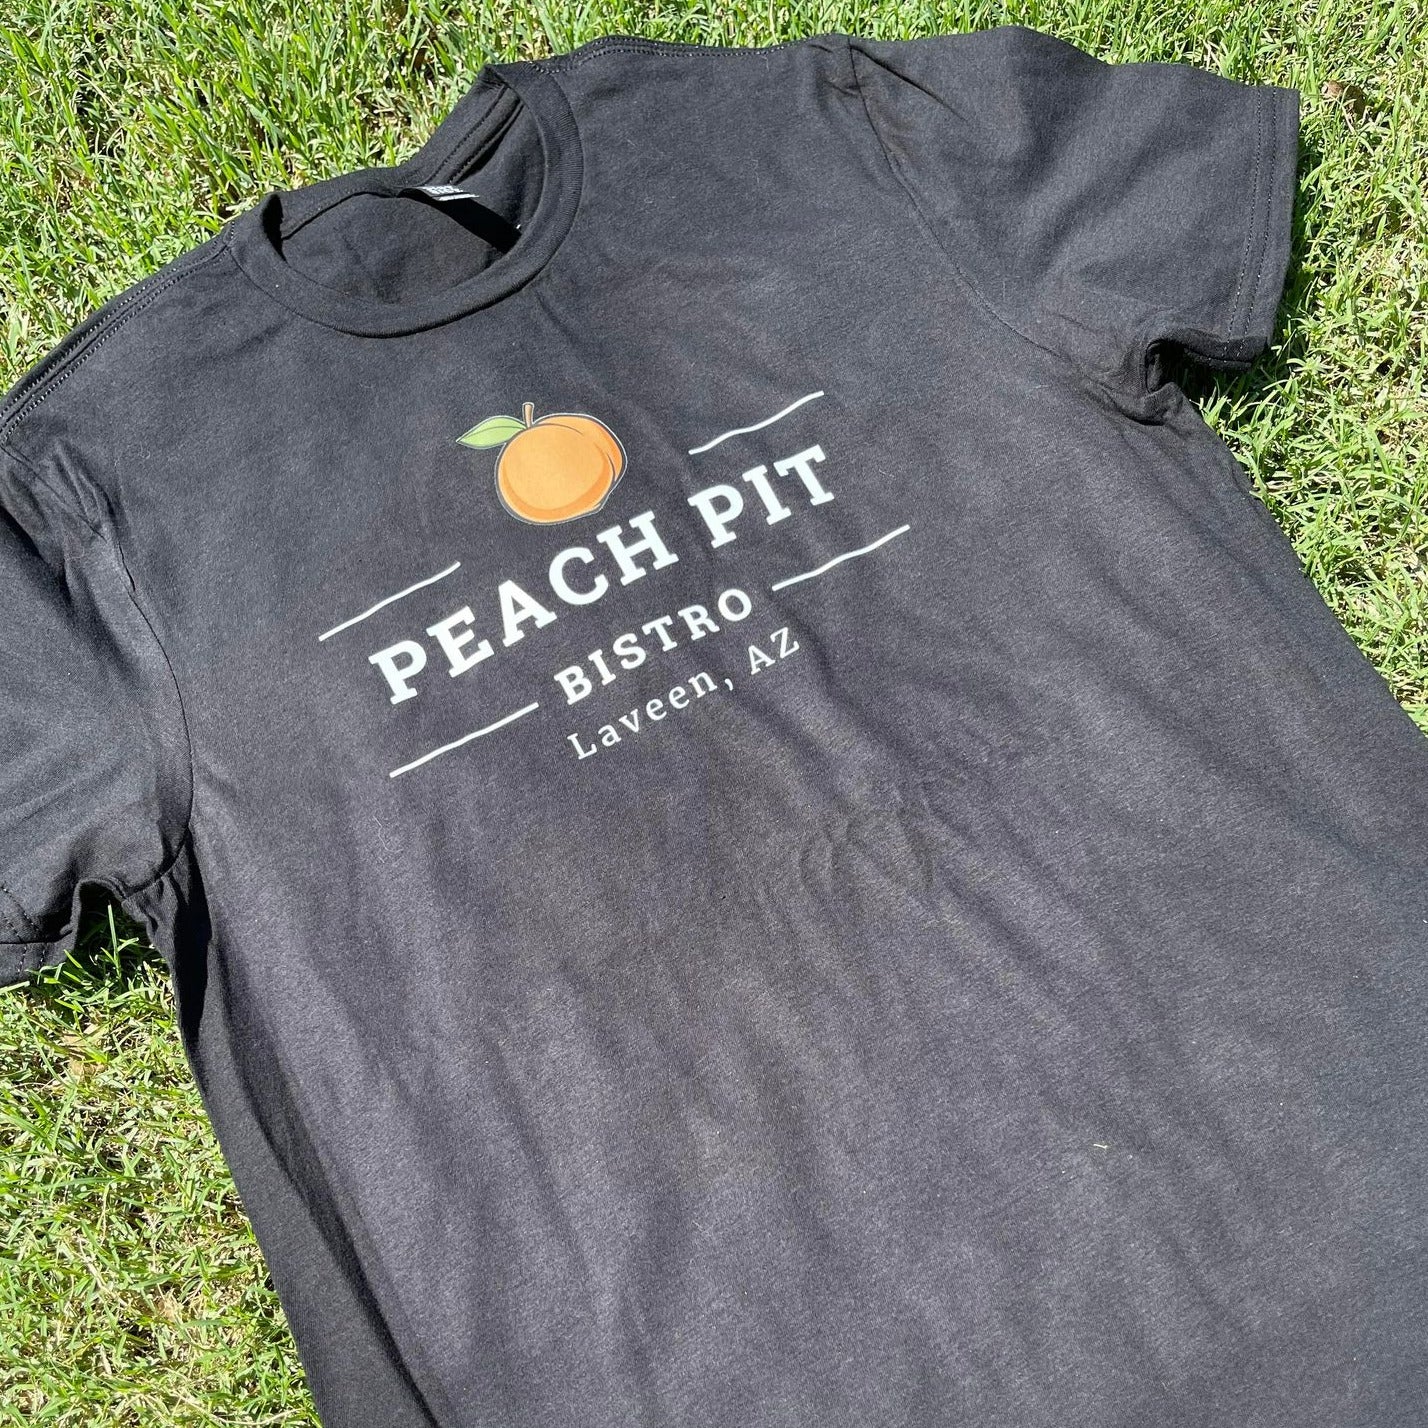 Peach Pit Bistro Tshirt